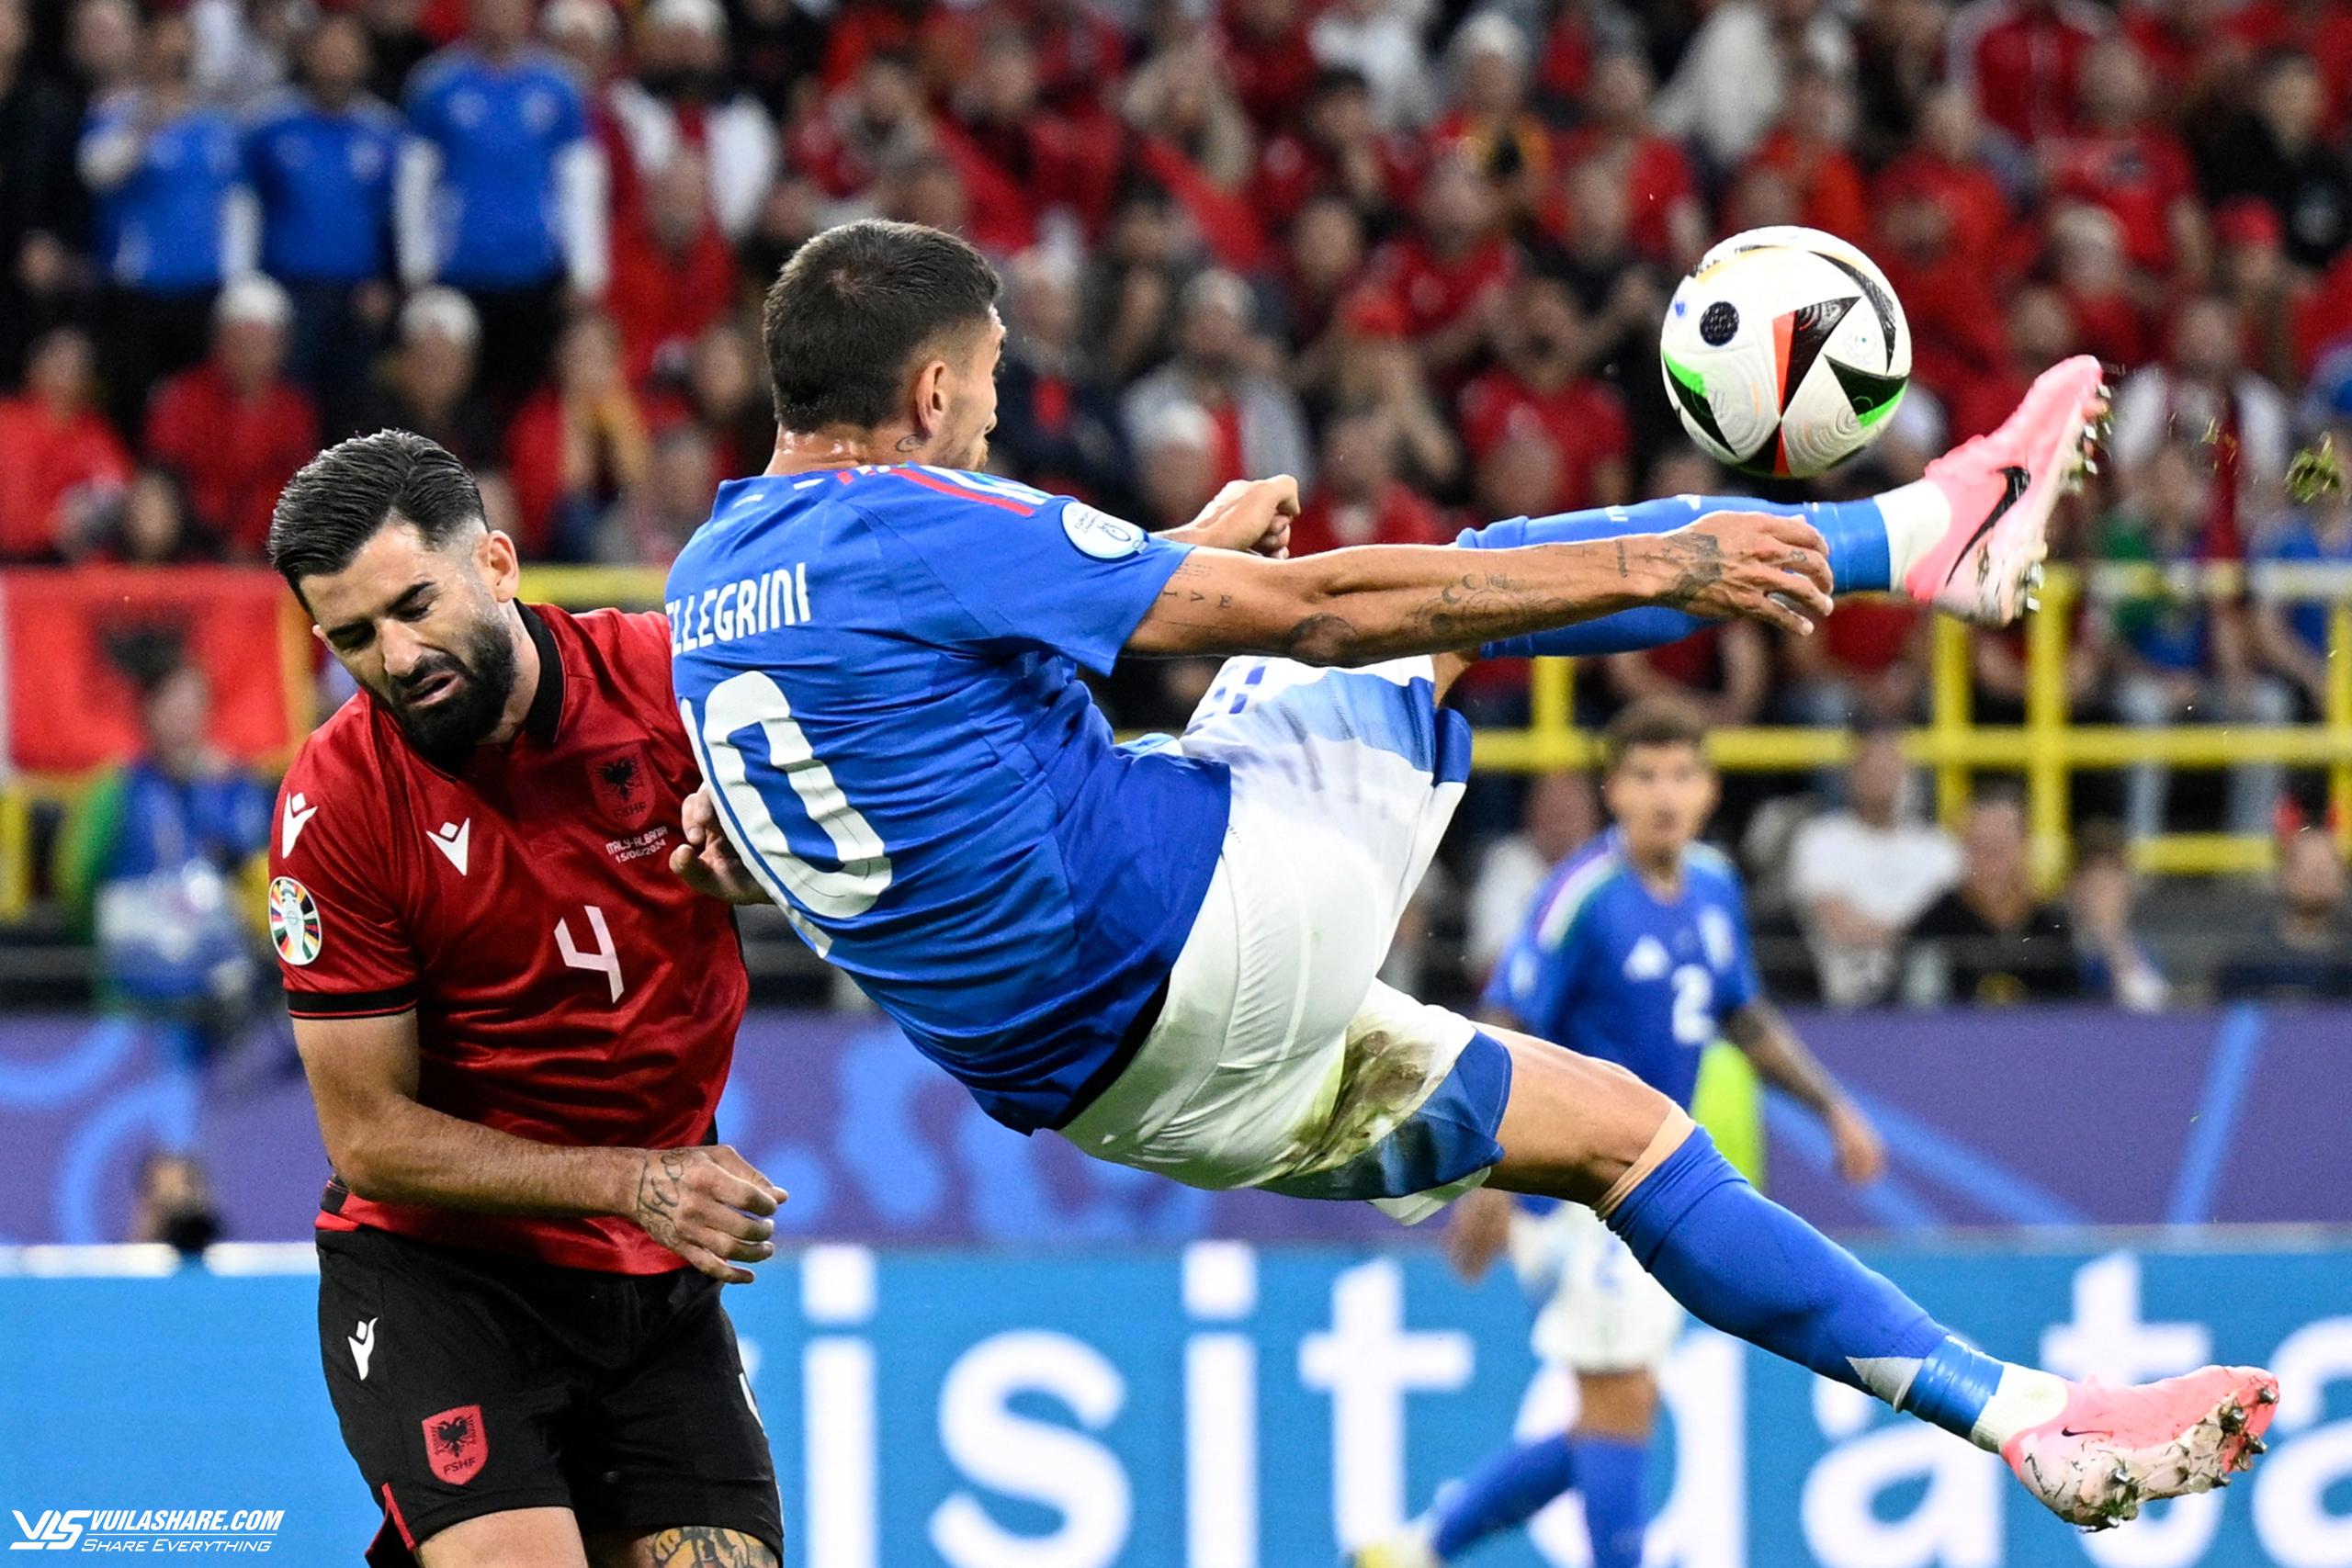 Ghi bàn nhanh nhất lịch sử EURO, Albania vẫn thua ngược đương kim vô địch Ý- Ảnh 2.